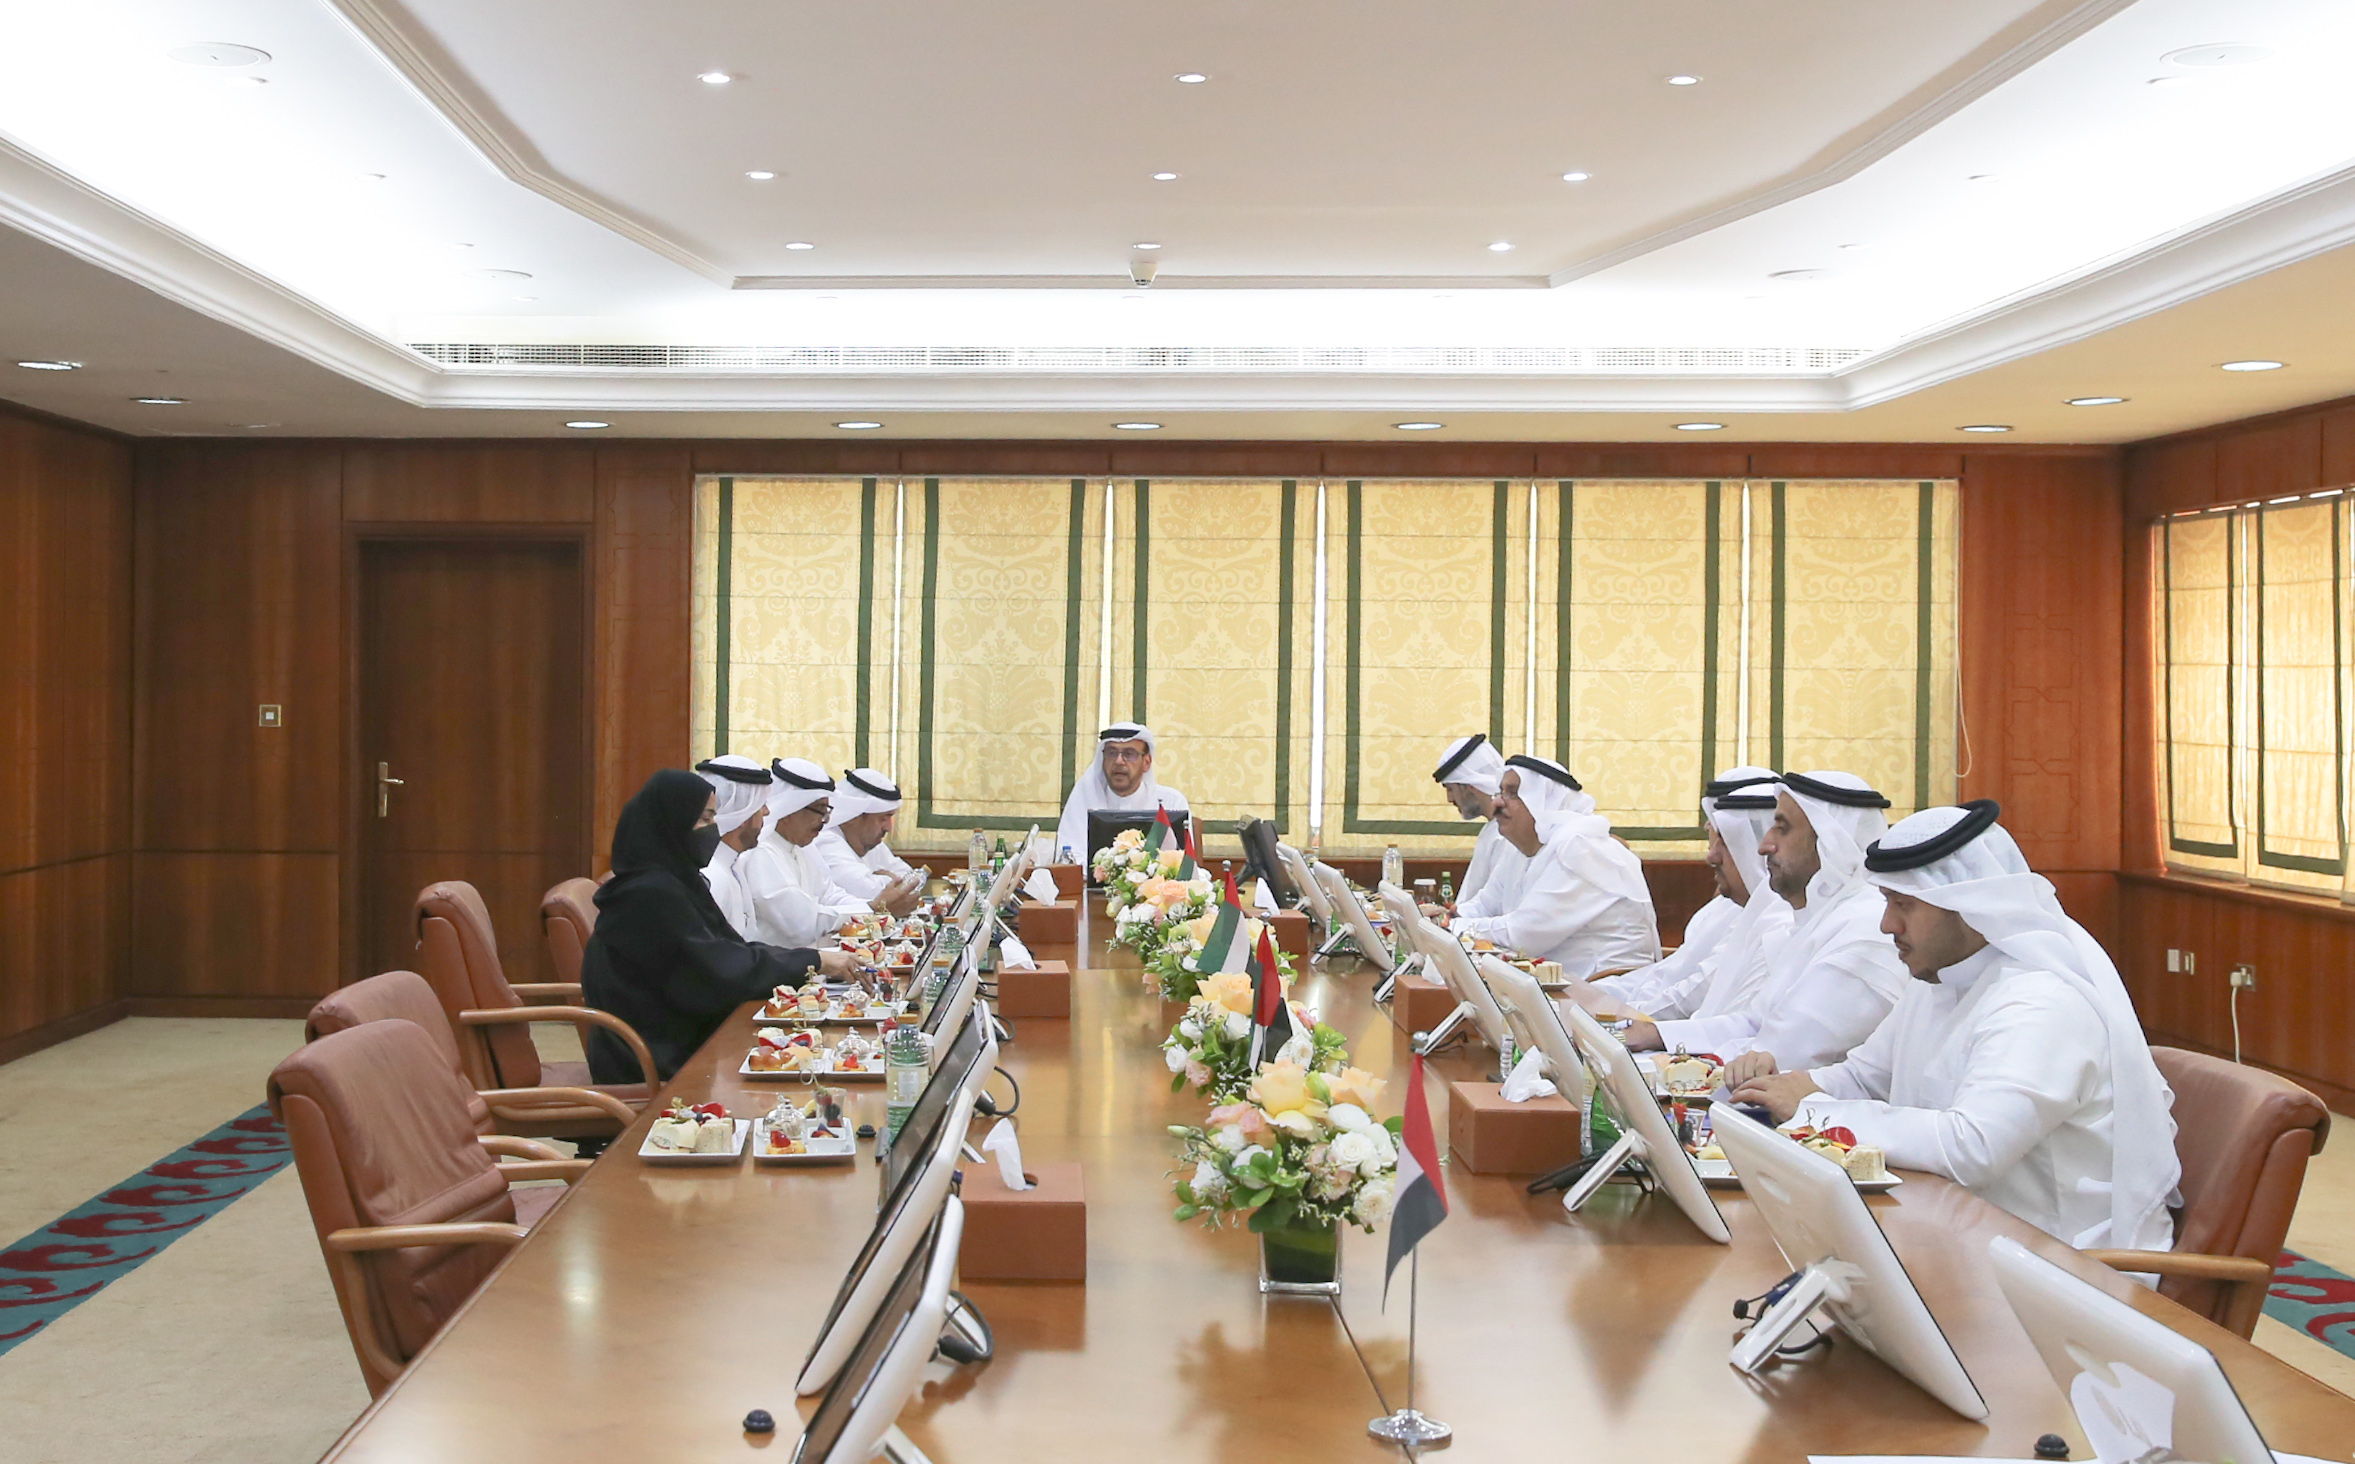 مجلس إدارة غرفة عجمان يعقد إجتماعه الثالث للعام 2021